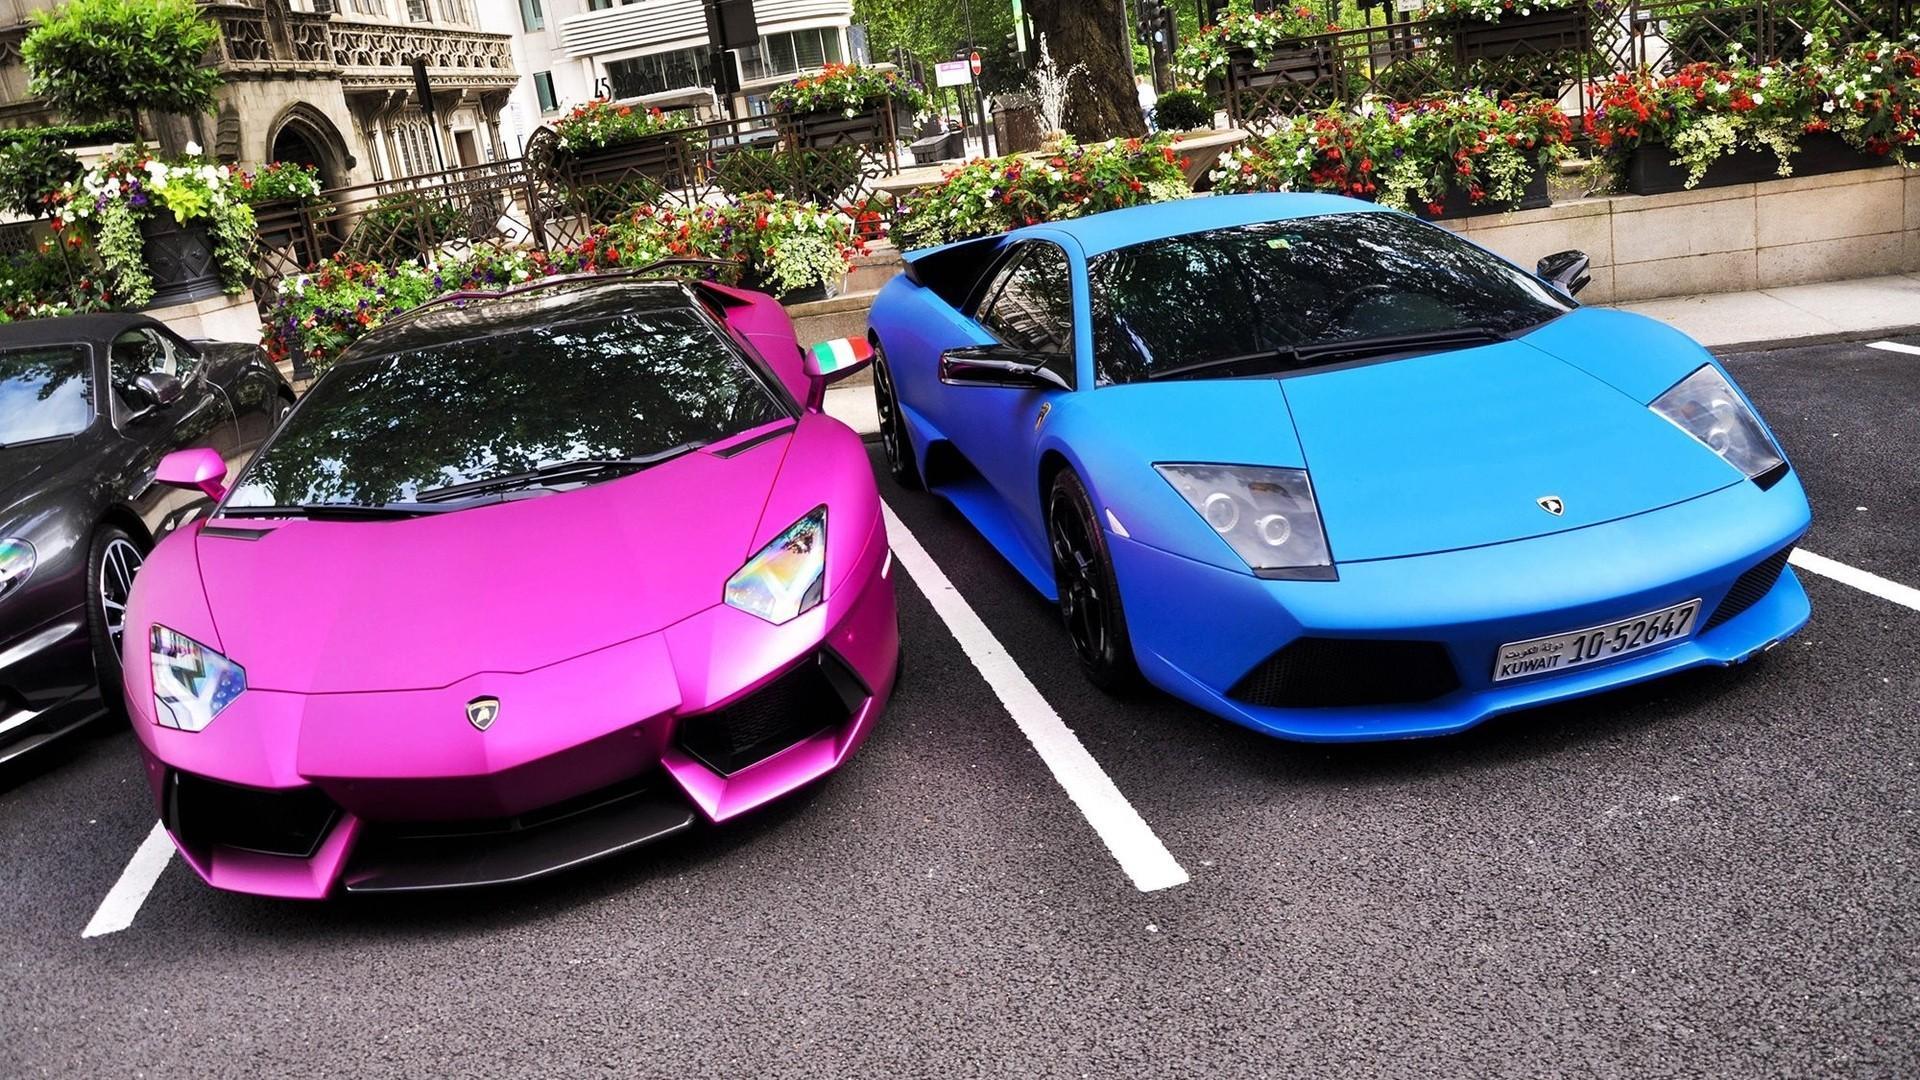 Pink Lamborghini Wallpapers - Top Free Pink Lamborghini ...